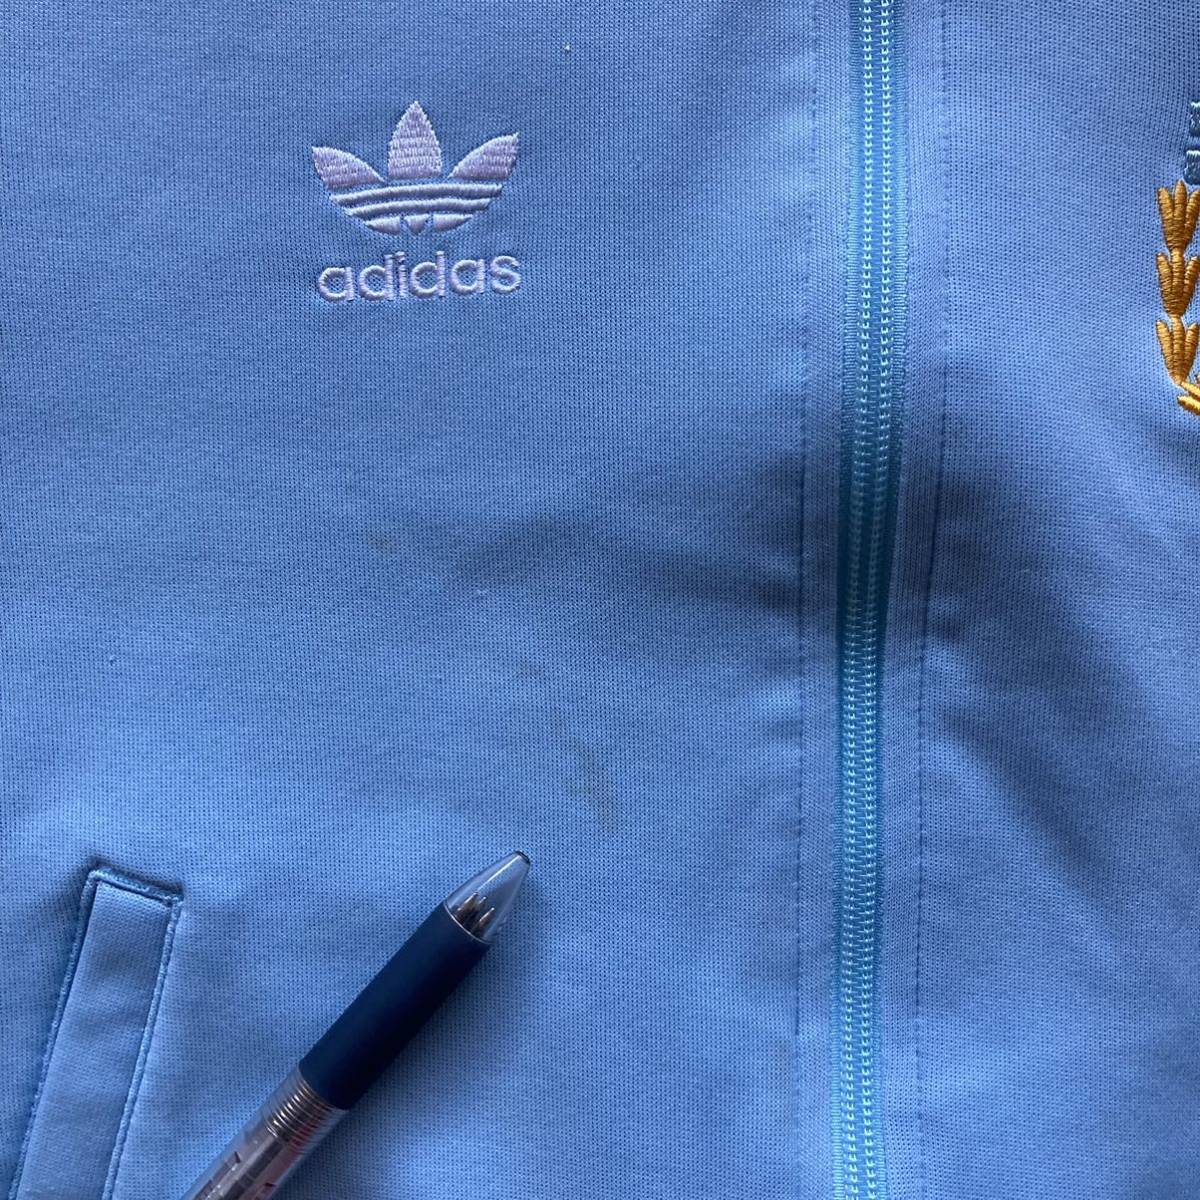 Adidas アディダス オリジナルス ワールドカップ アルゼンチン代表 